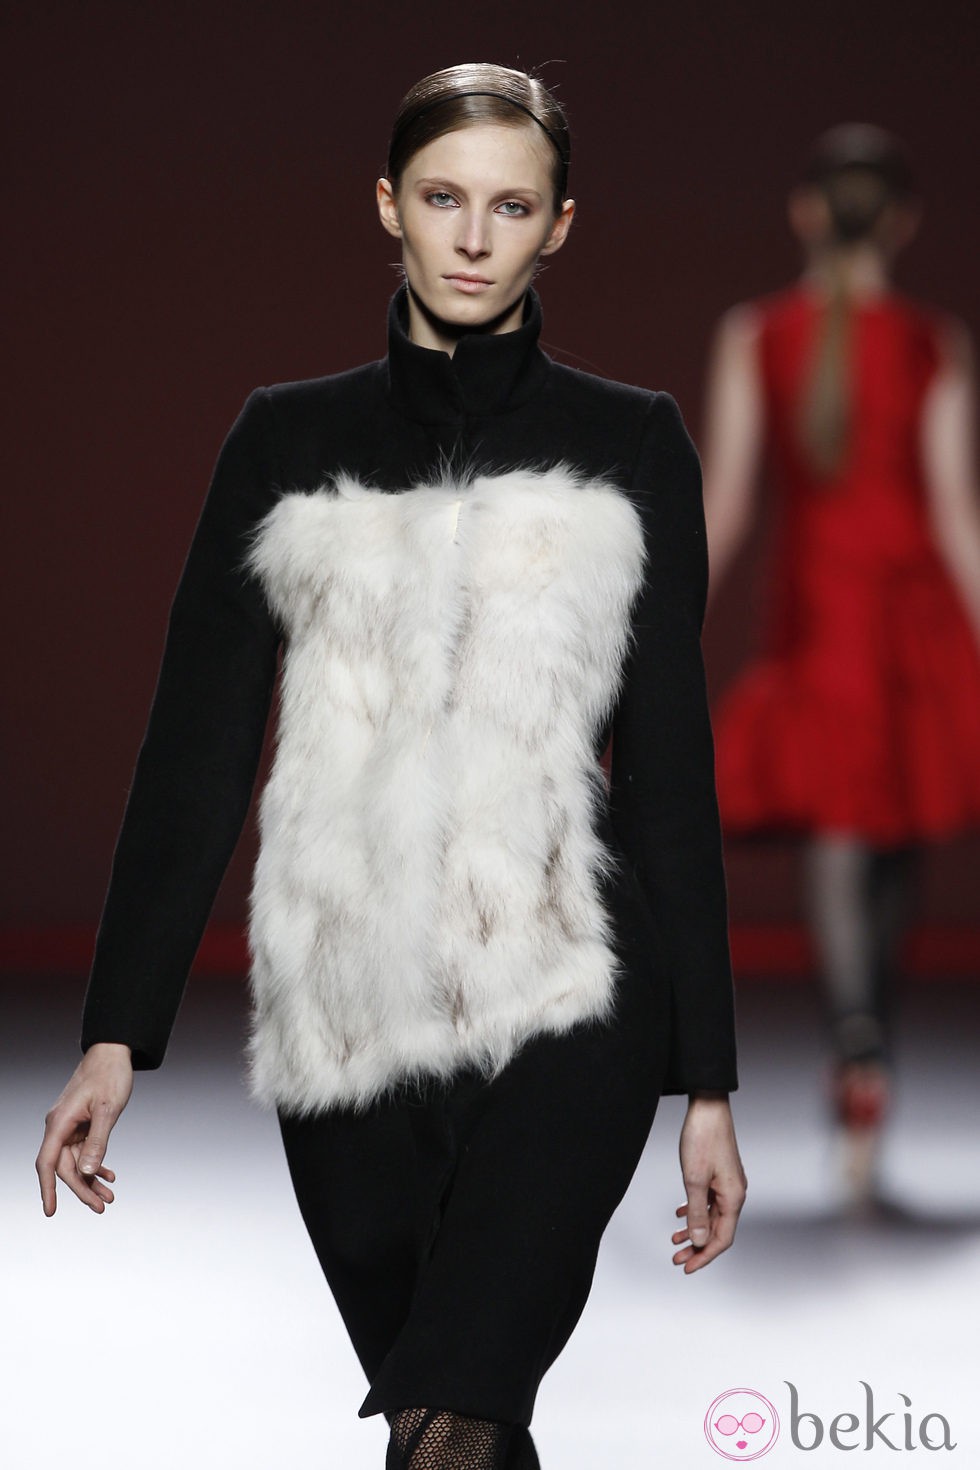 Vestido negro con corpiño de pelo blanco de Amaya Arzuaga en Fashion Week Madrid